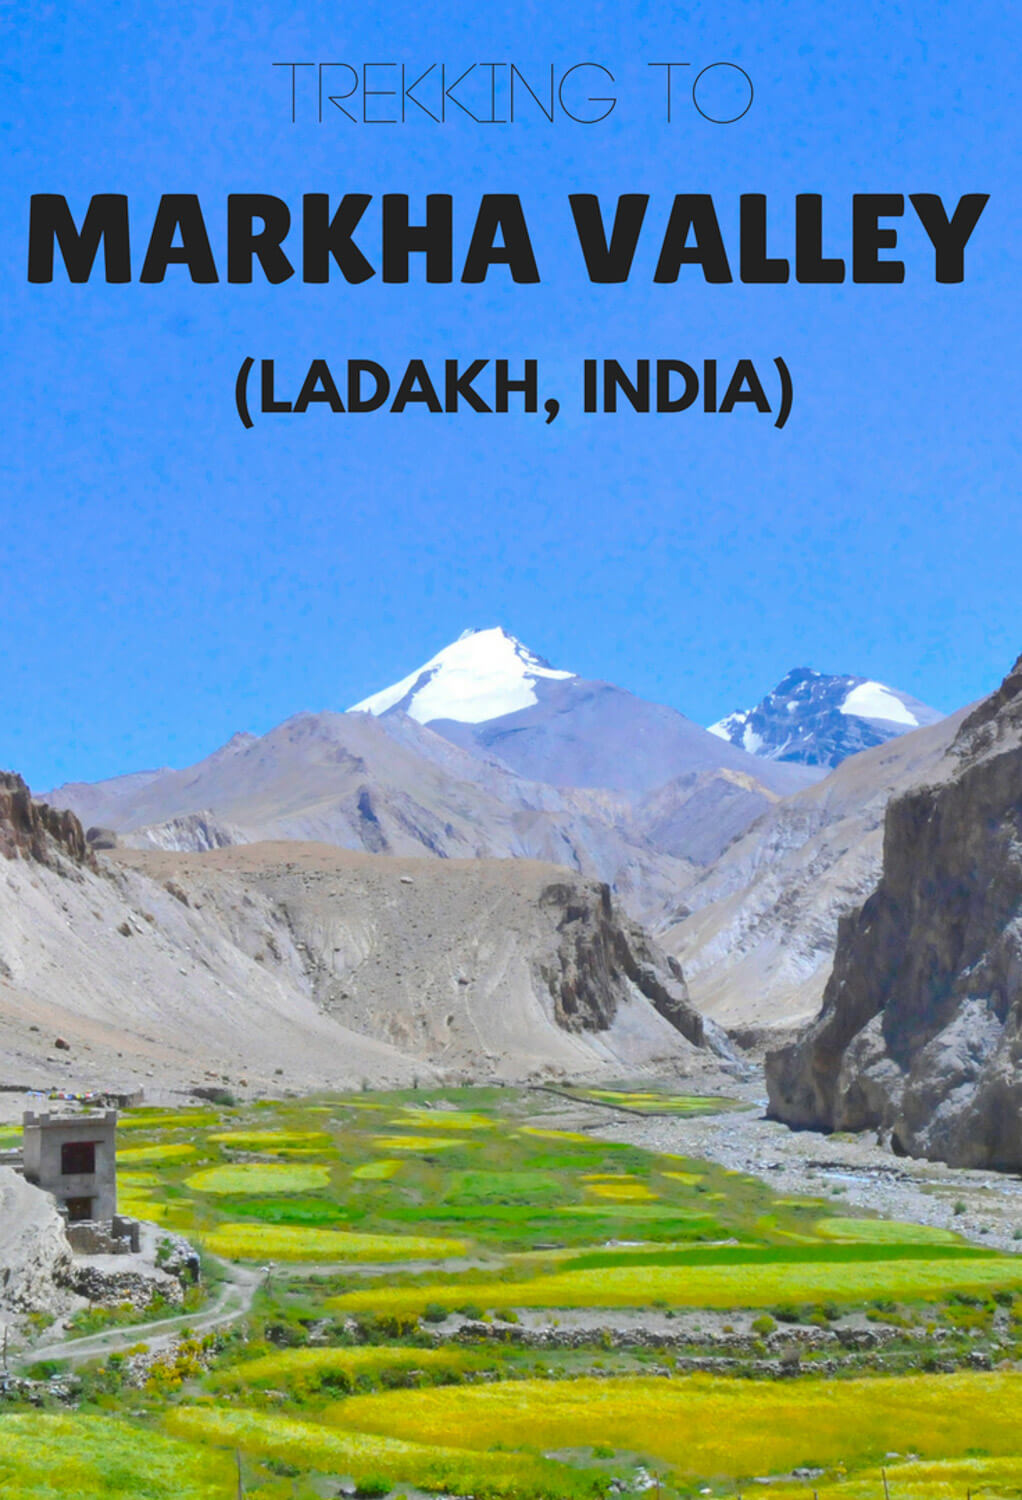 markha valley trek guide